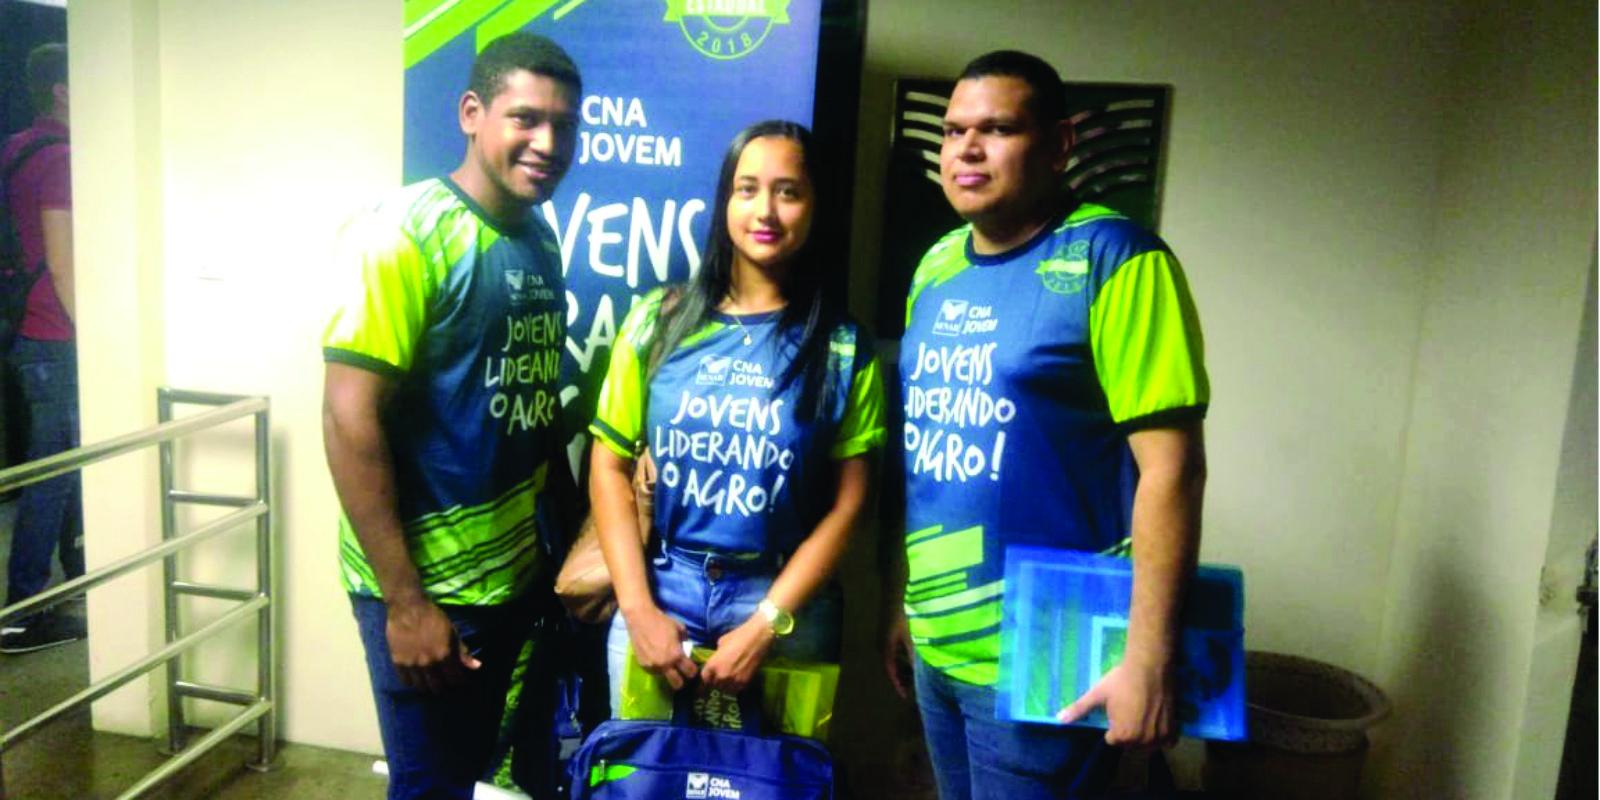 Amapaenses participam da etapa estadual do Programa CNA Jovem no Estado do Pará